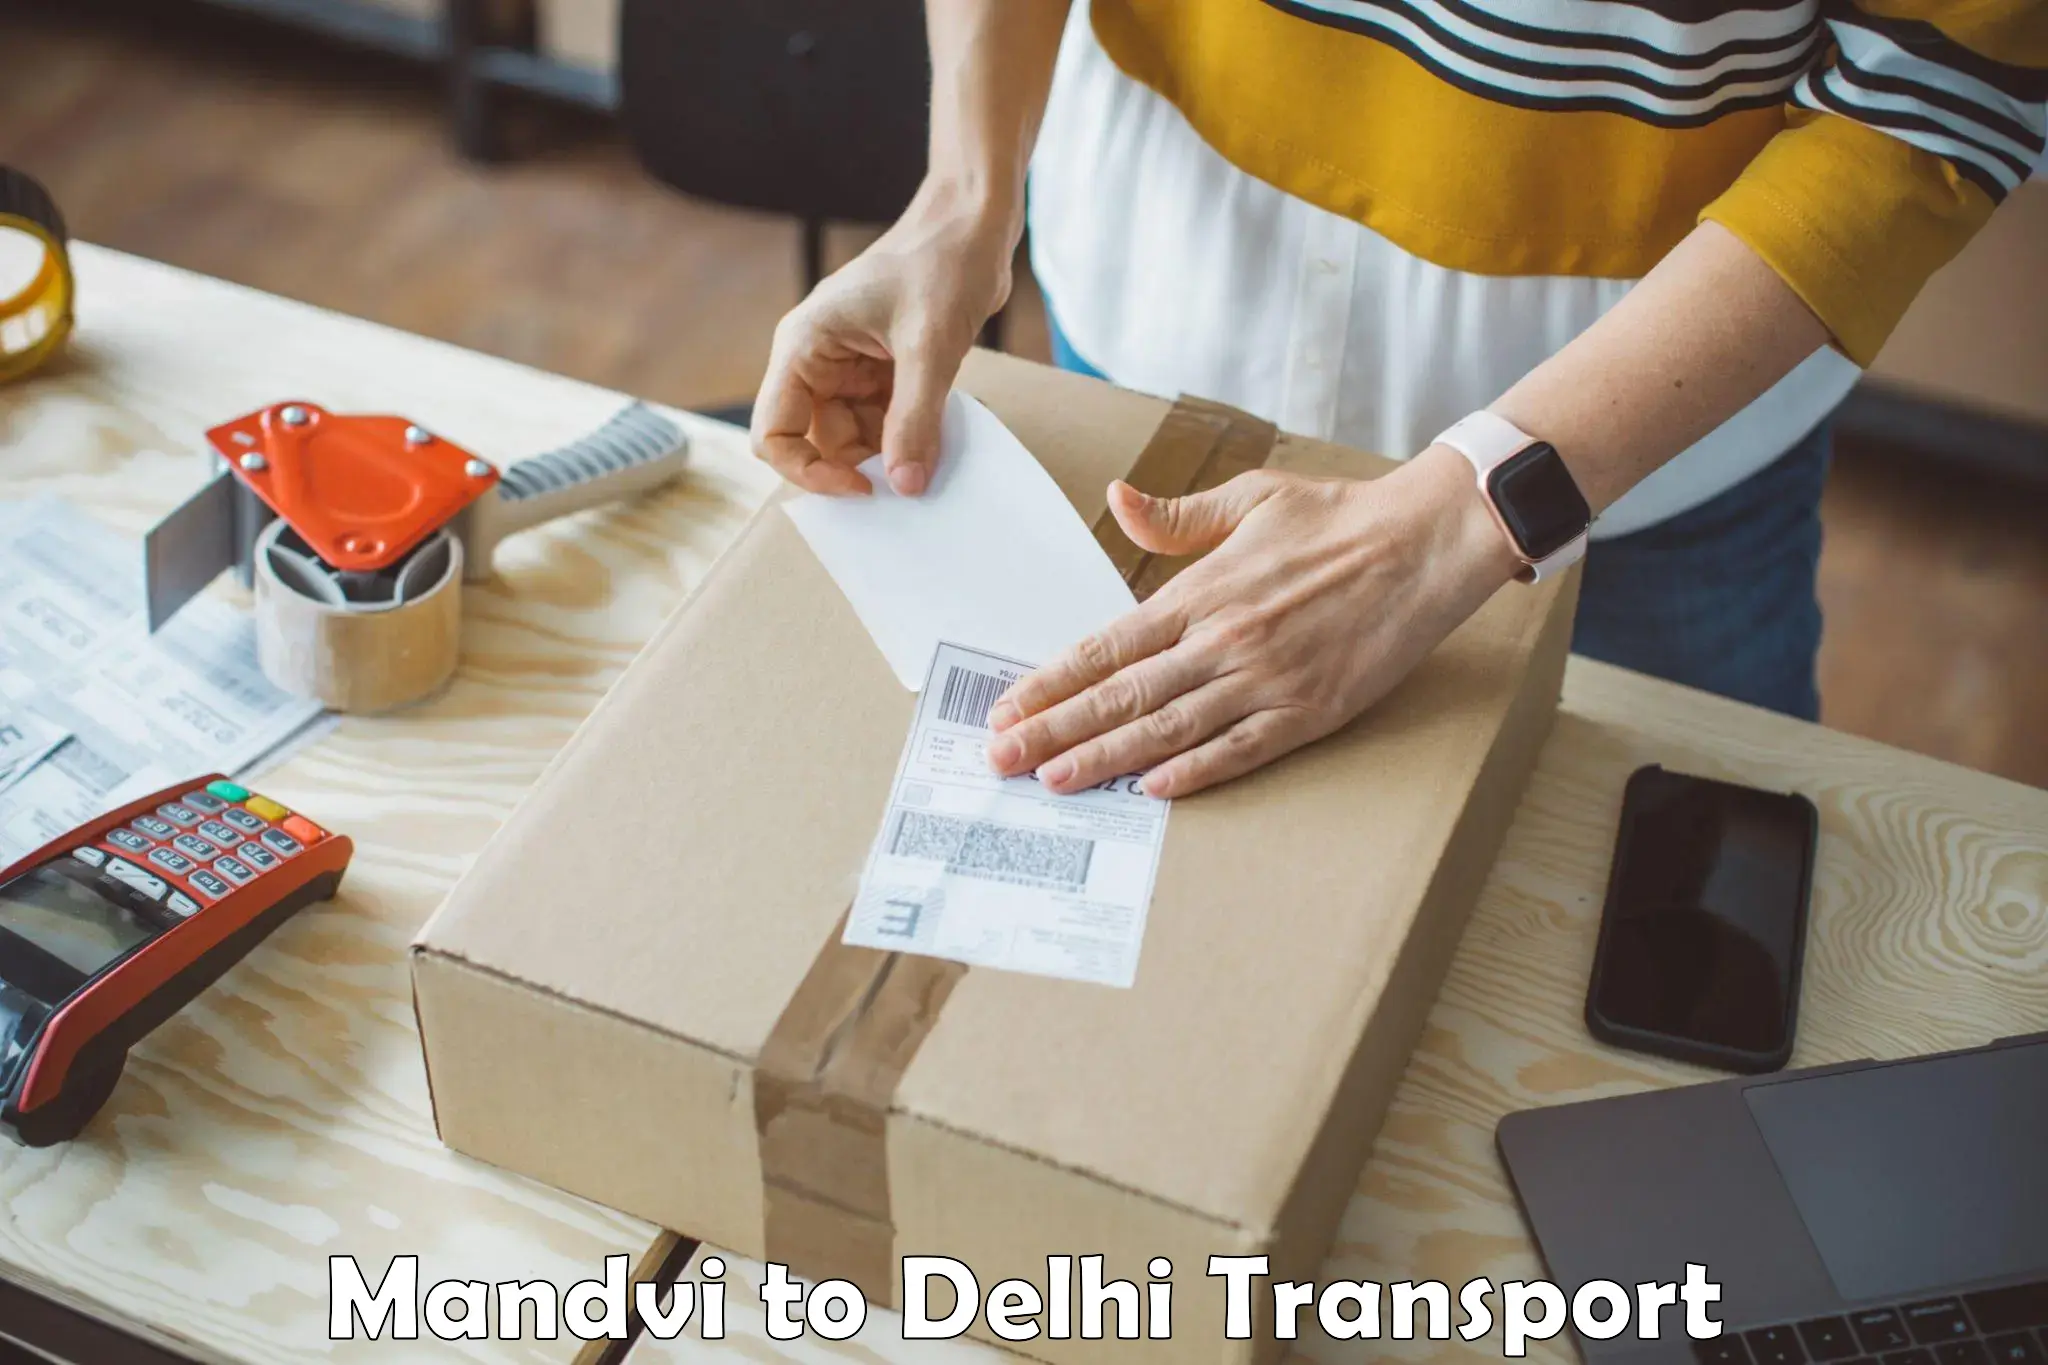 Container transport service Mandvi to East Delhi